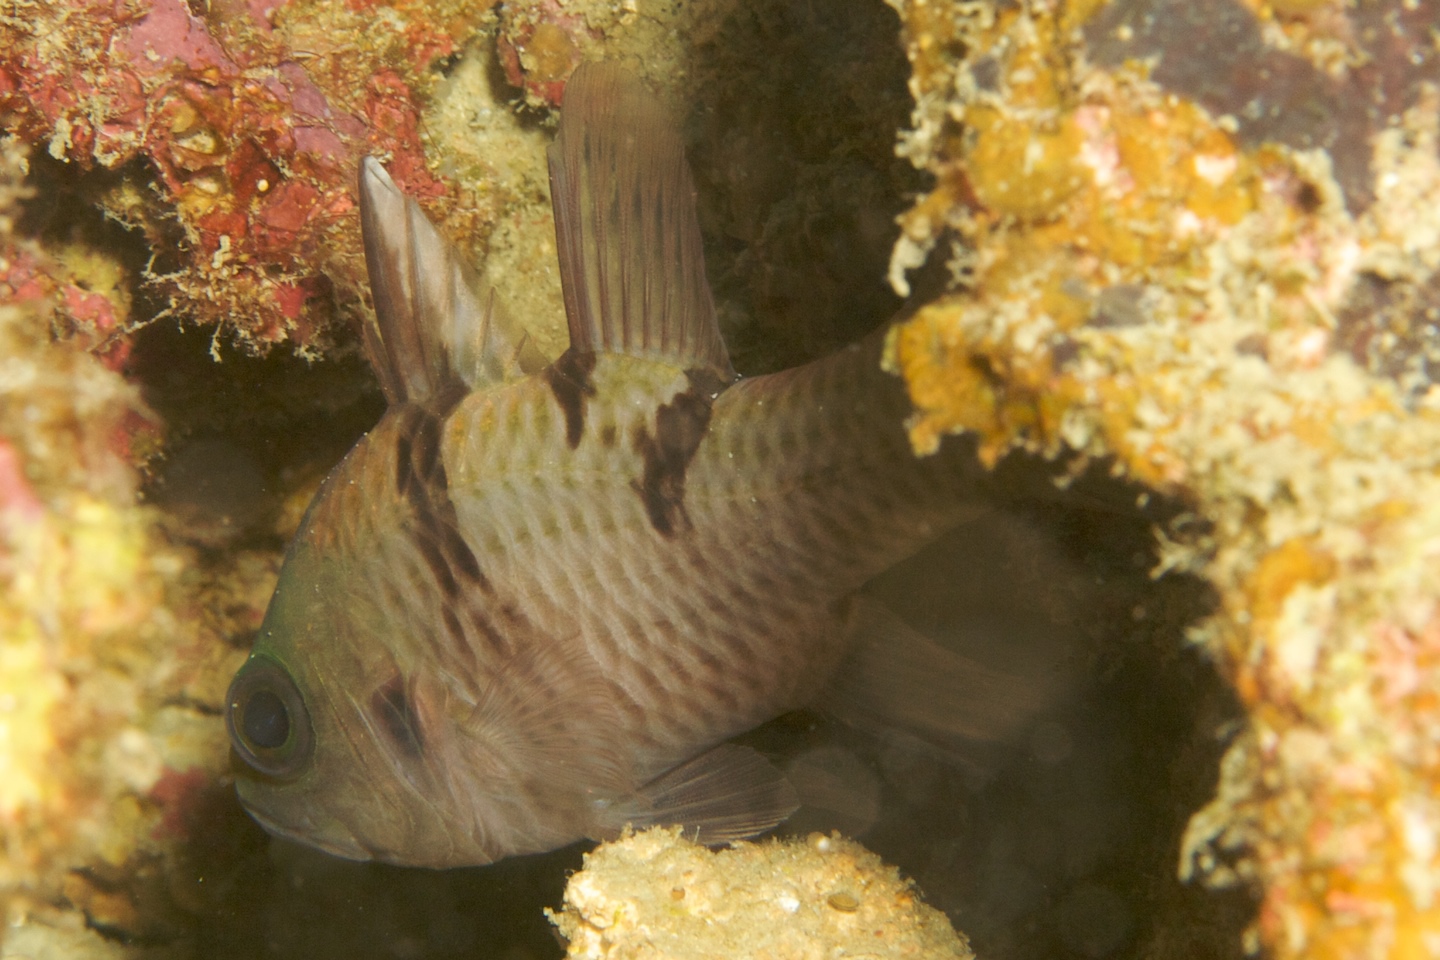 Three-spot cardinalfish